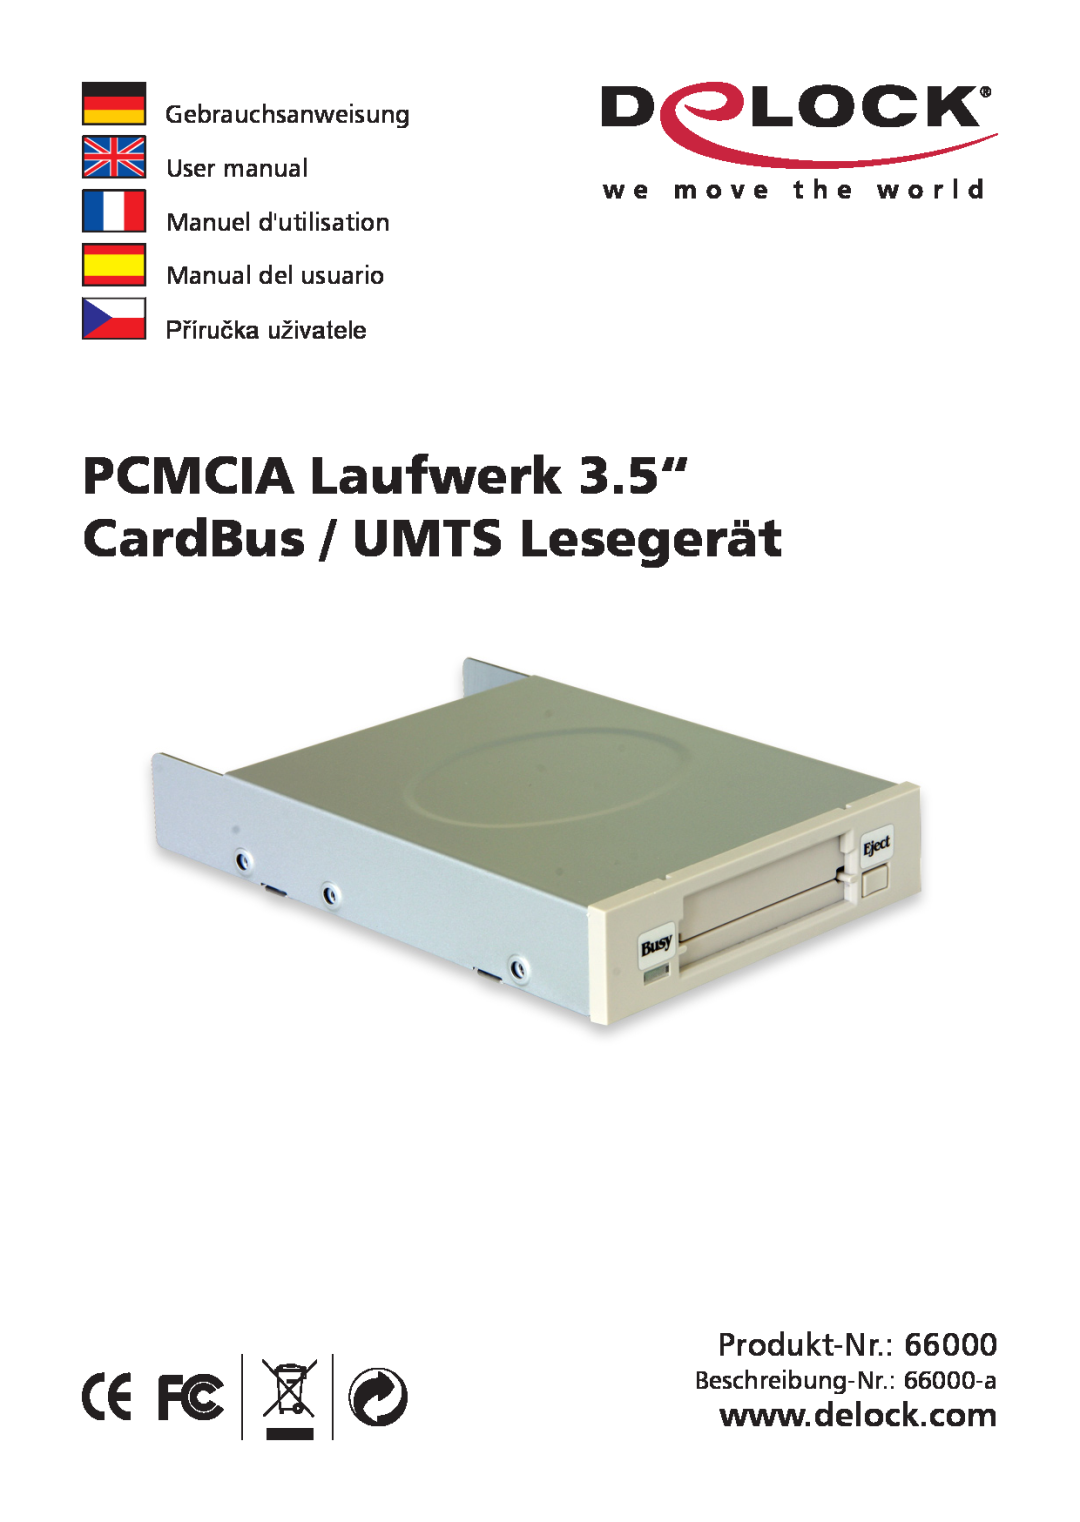 DeLOCK Delock PCMCIA Laufwerk 3.5" CardBus / umts Lesegerat user manual PCMCIA Laufwerk 3.5“ CardBus / UMTS Lesegerät 